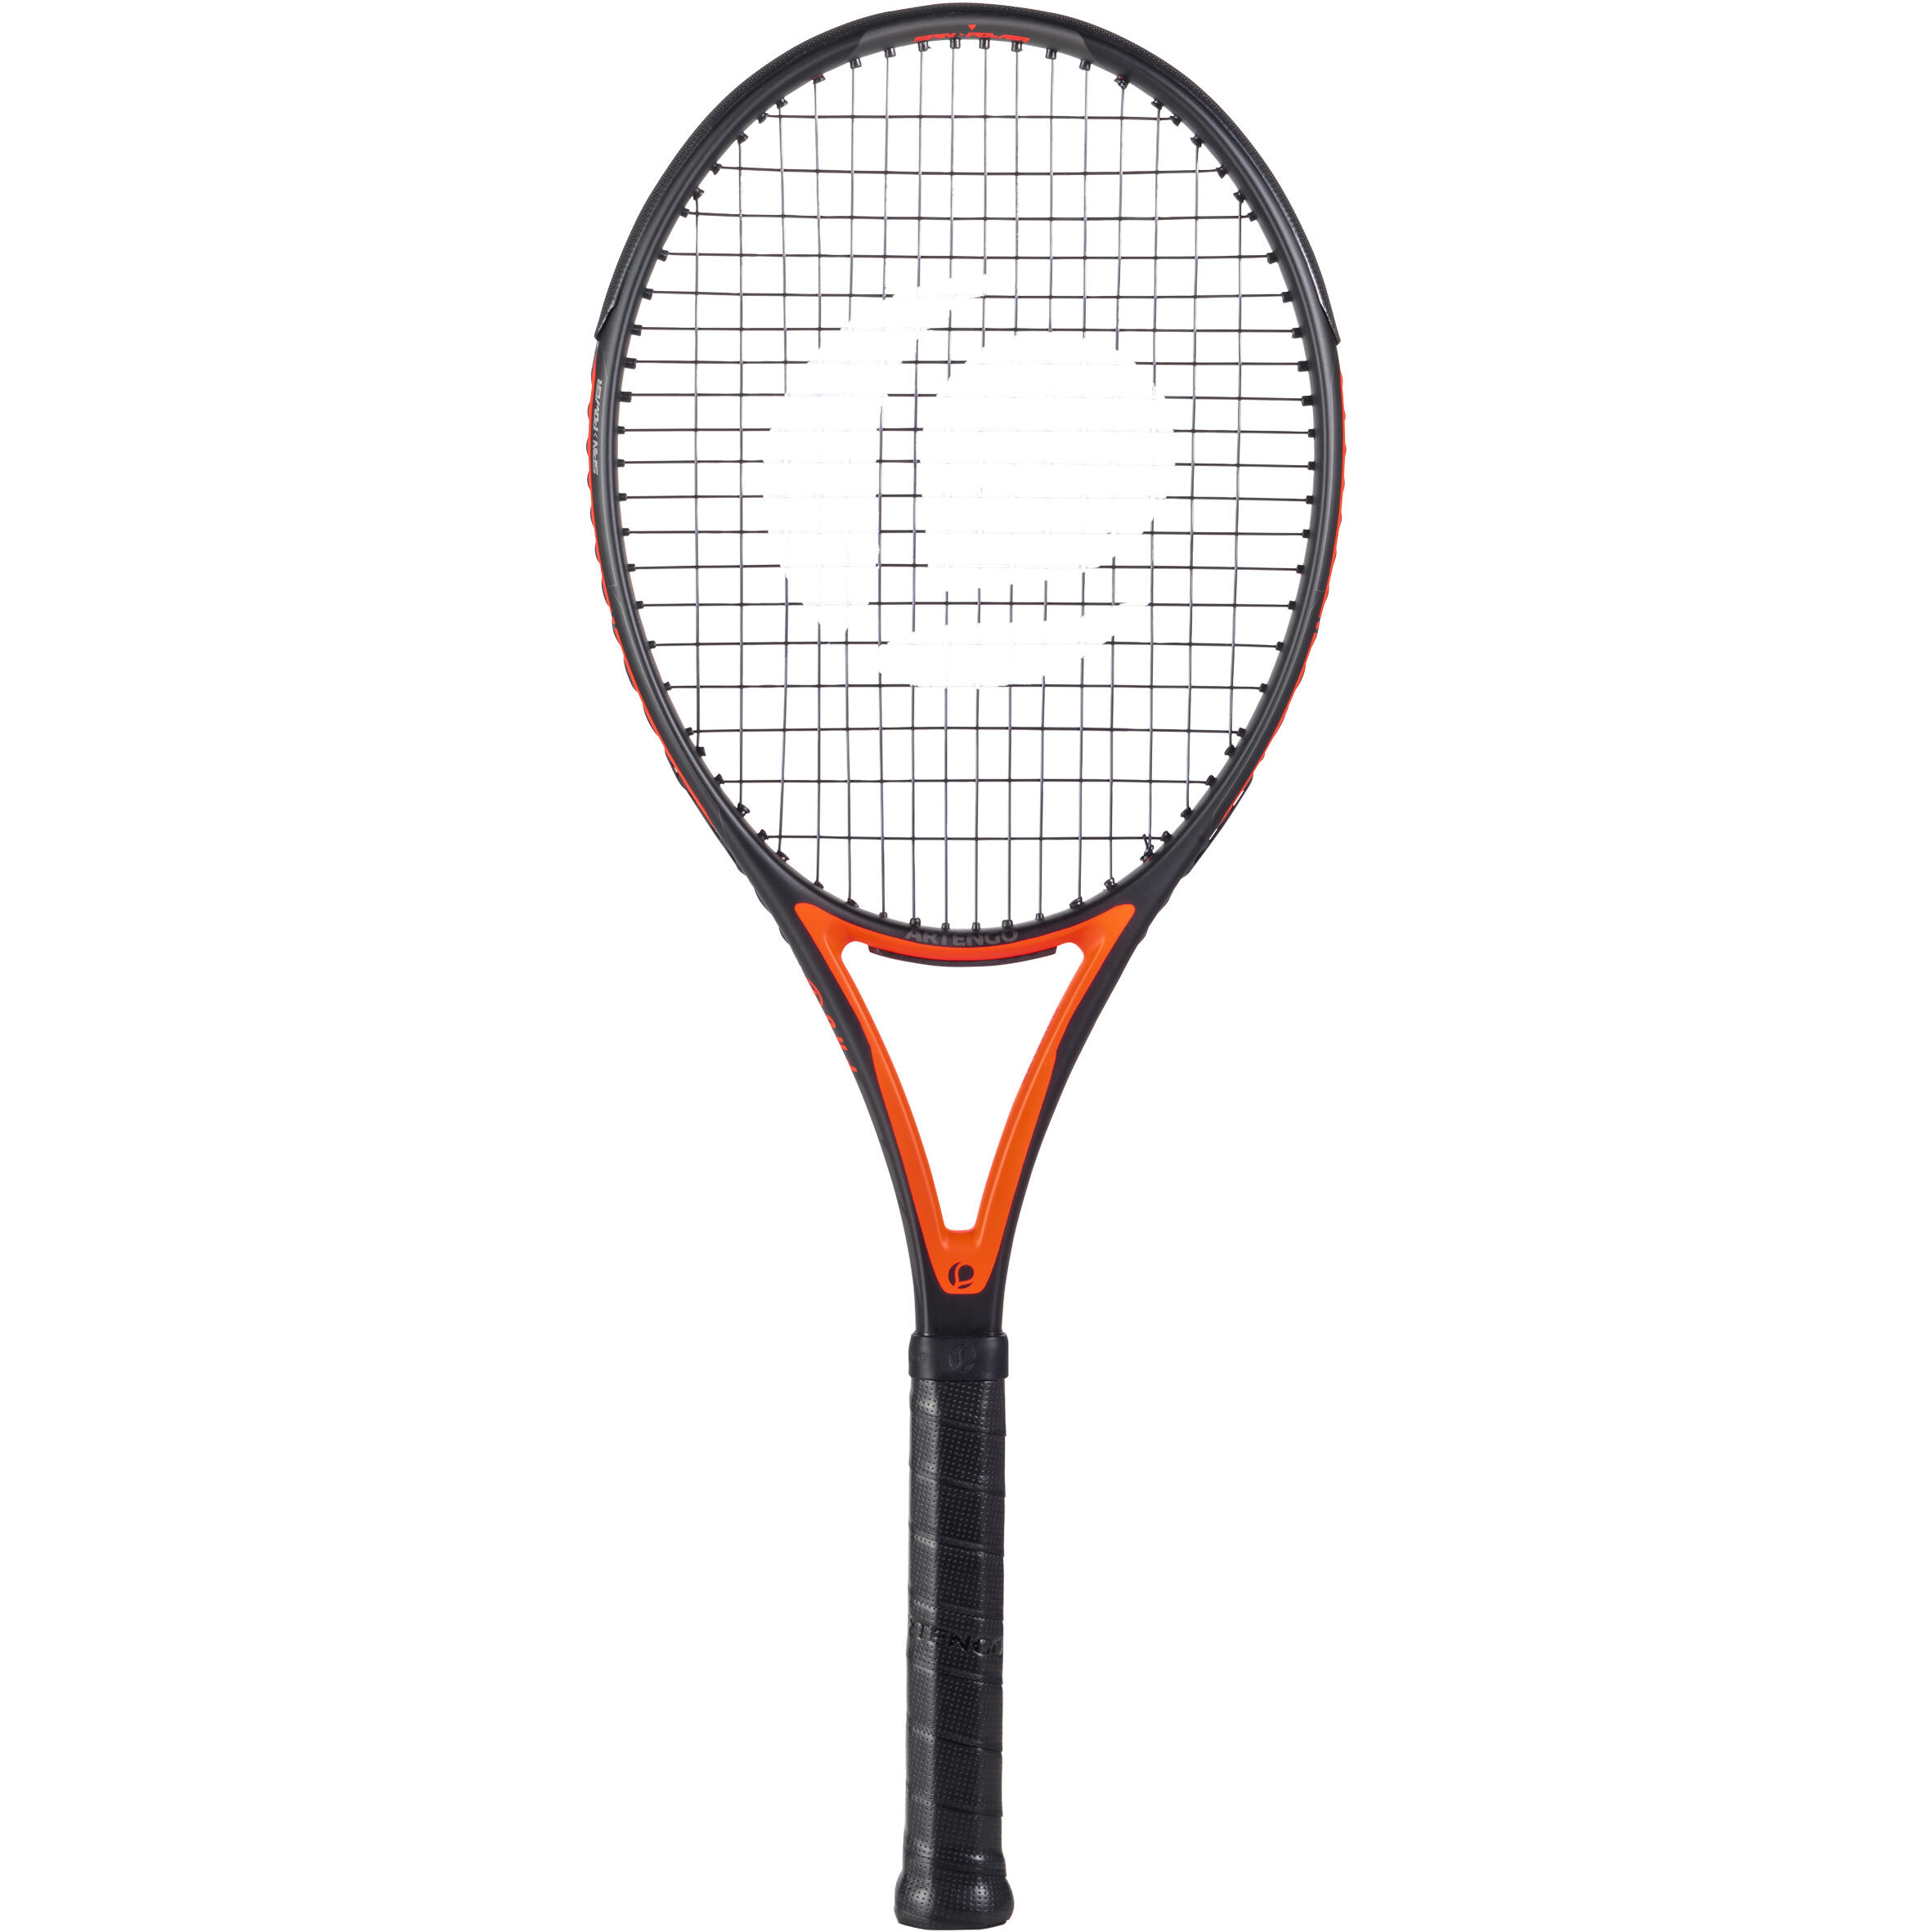 Rachetă Tenis TR990 Pro+ Negru-Roșu Adulţi La Oferta Online ARTENGO imagine La Oferta Online